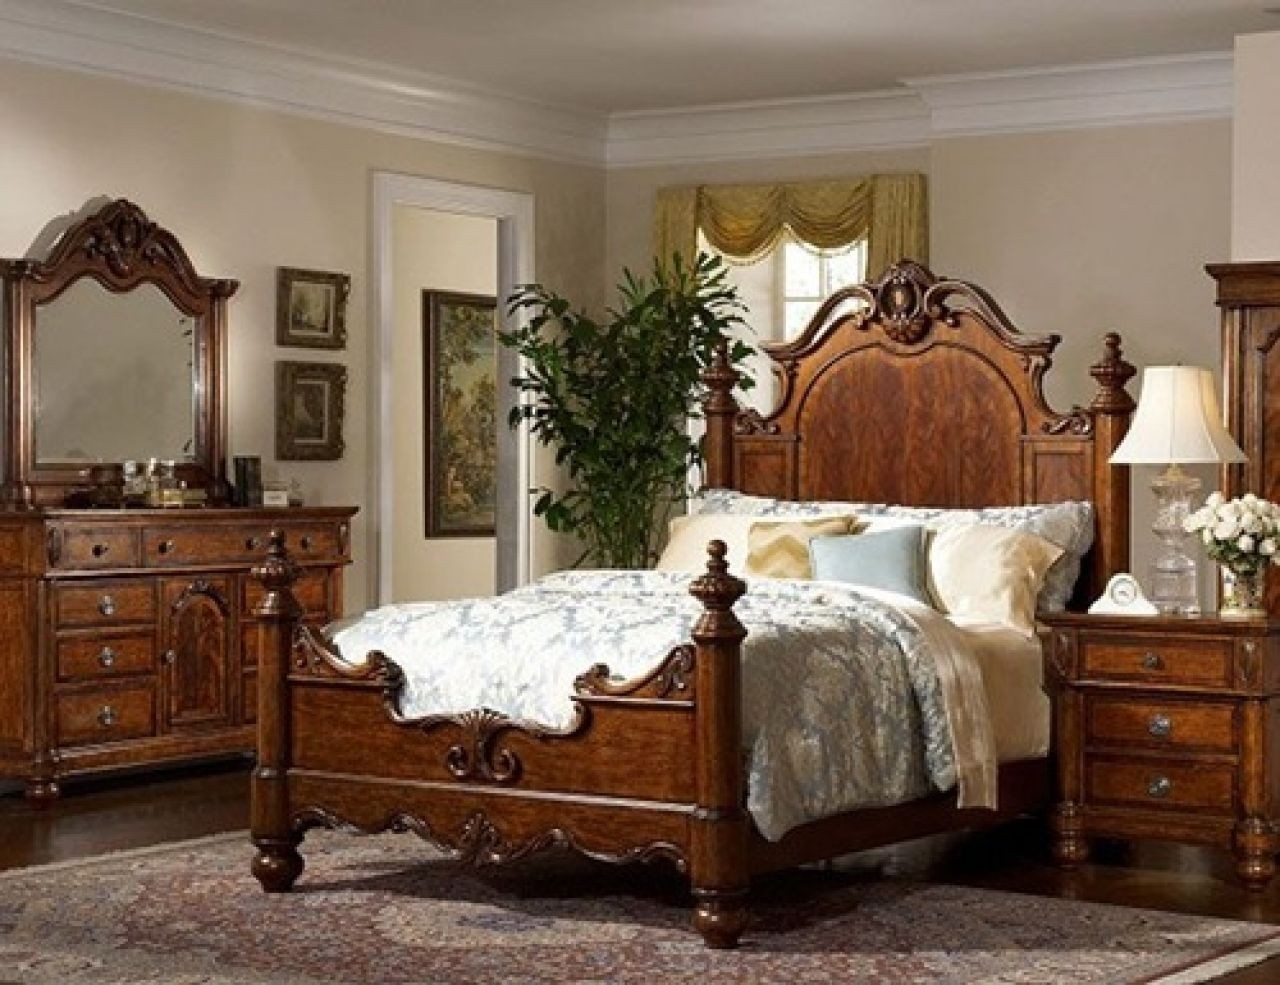 Victorian bedroom decorating ideas bedrooms room design wagen